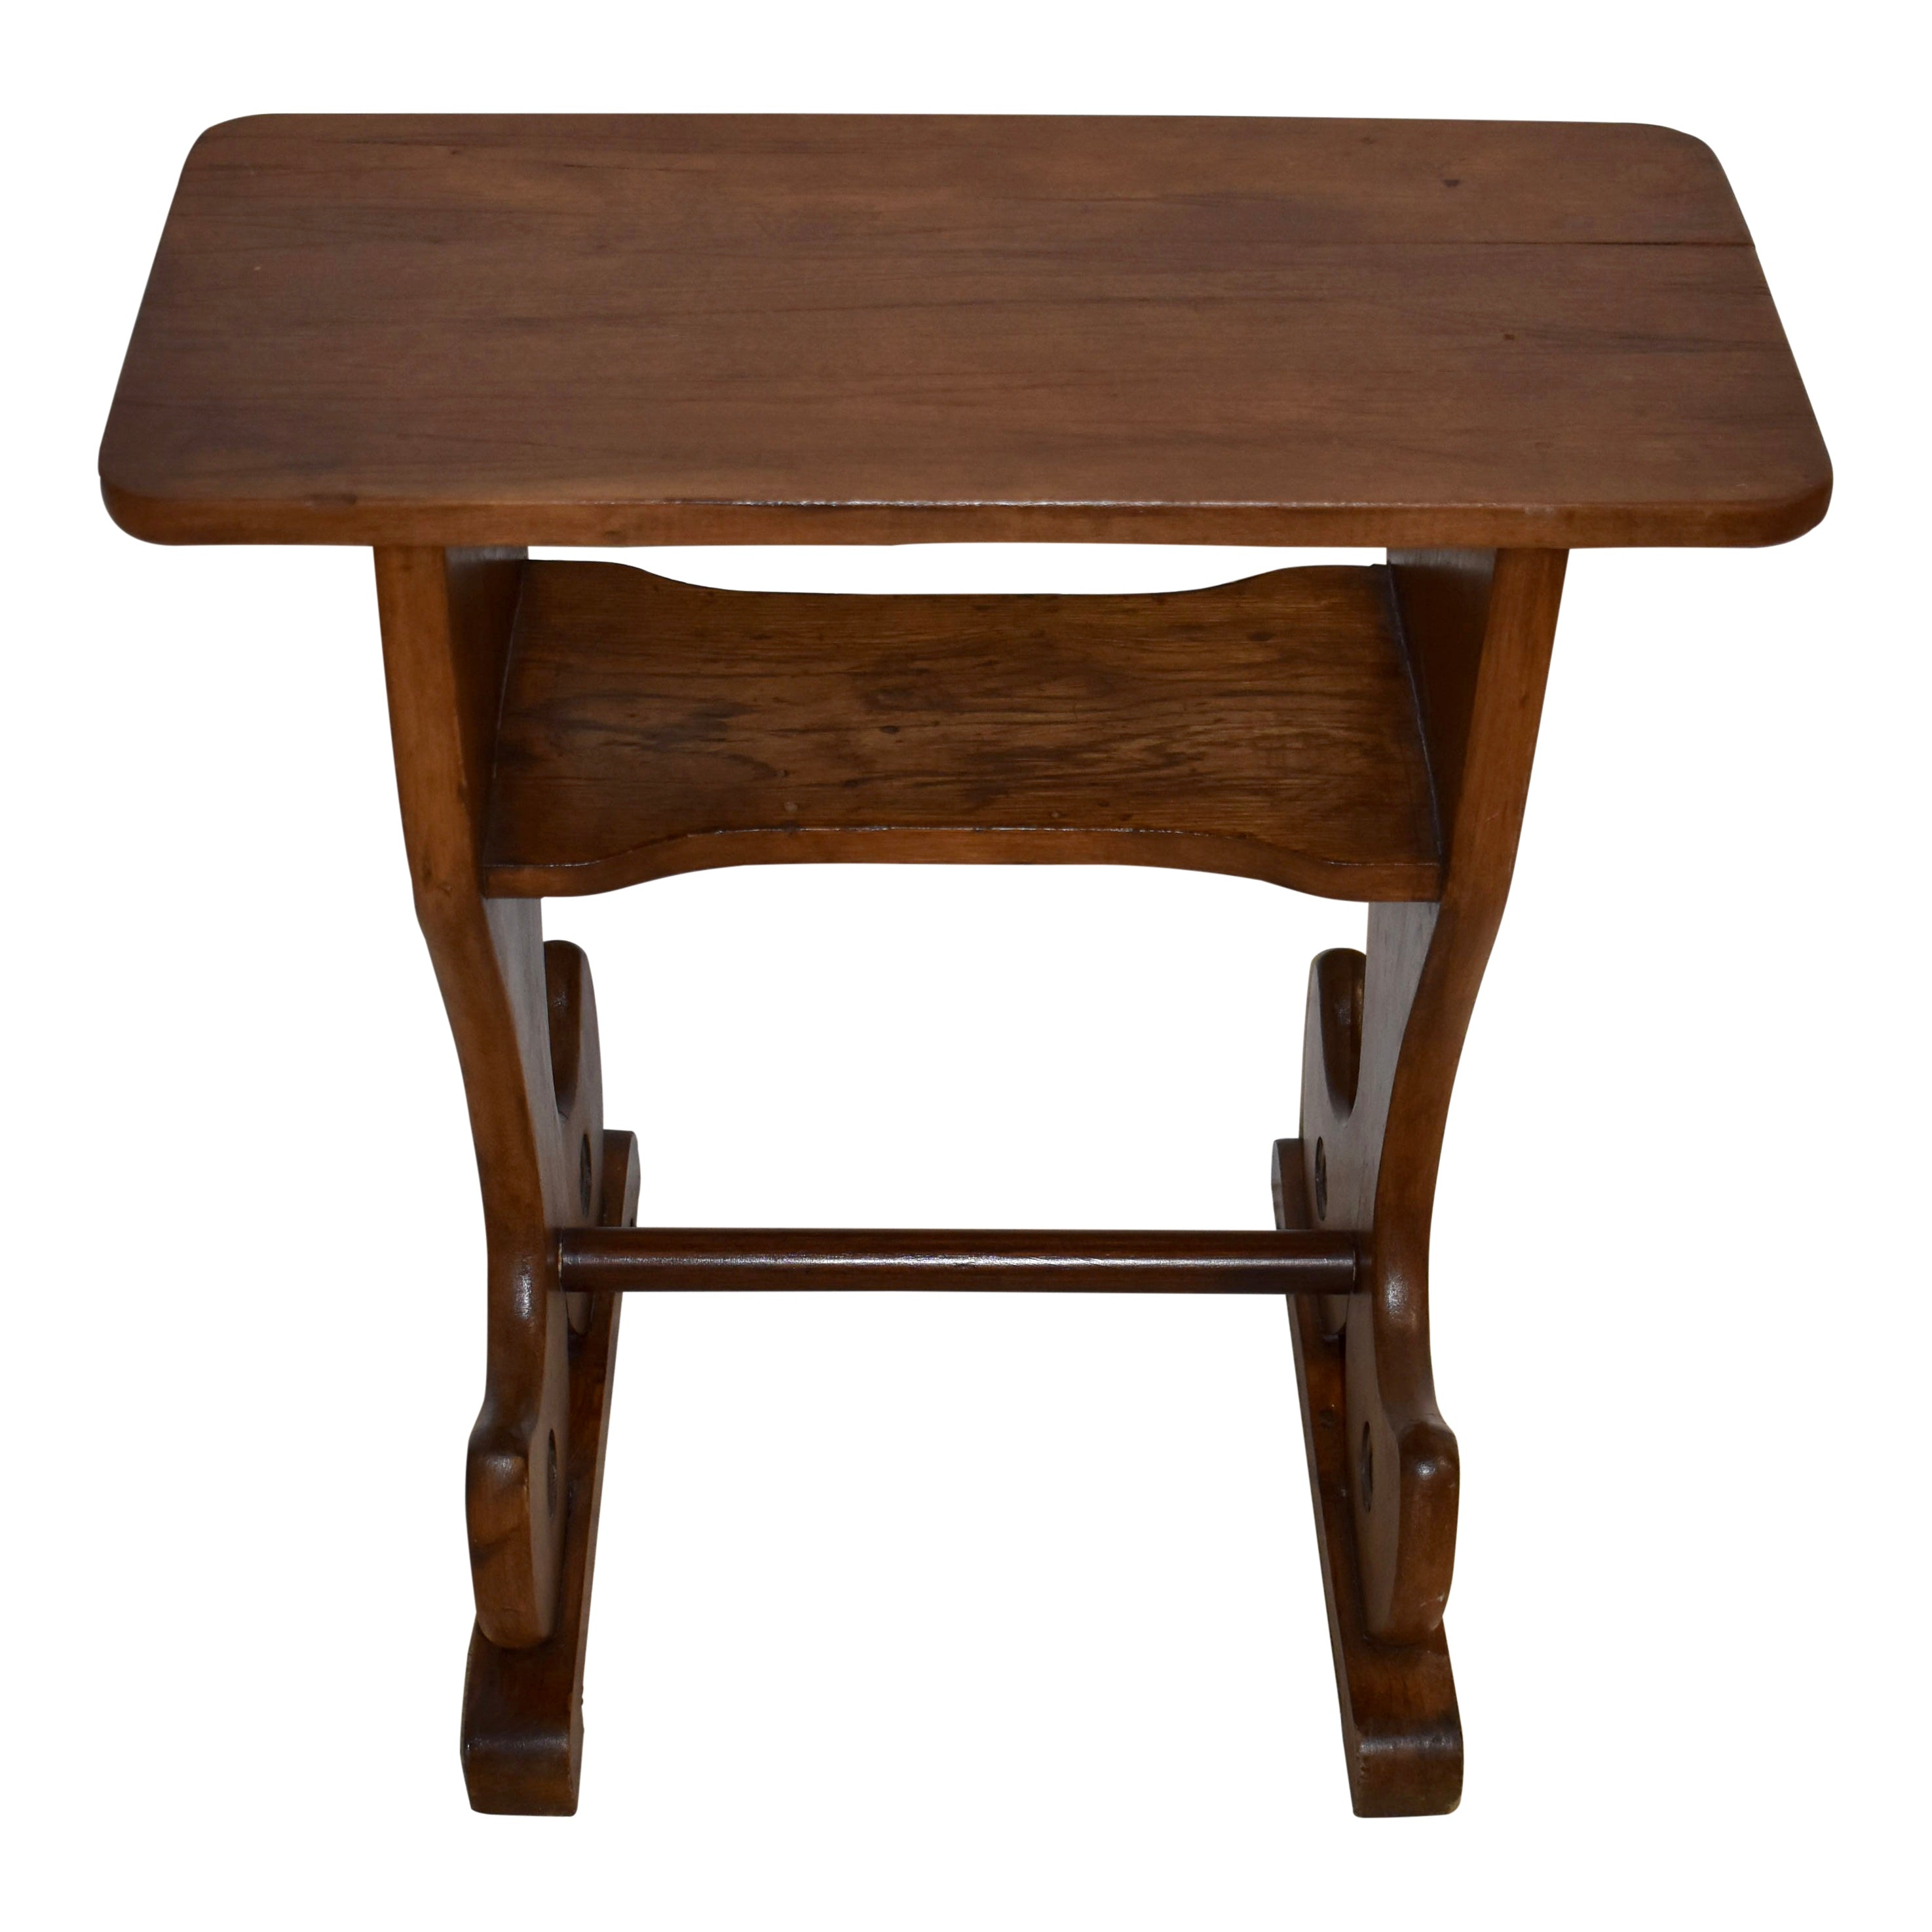 Oak Side Table with Lower Shelf